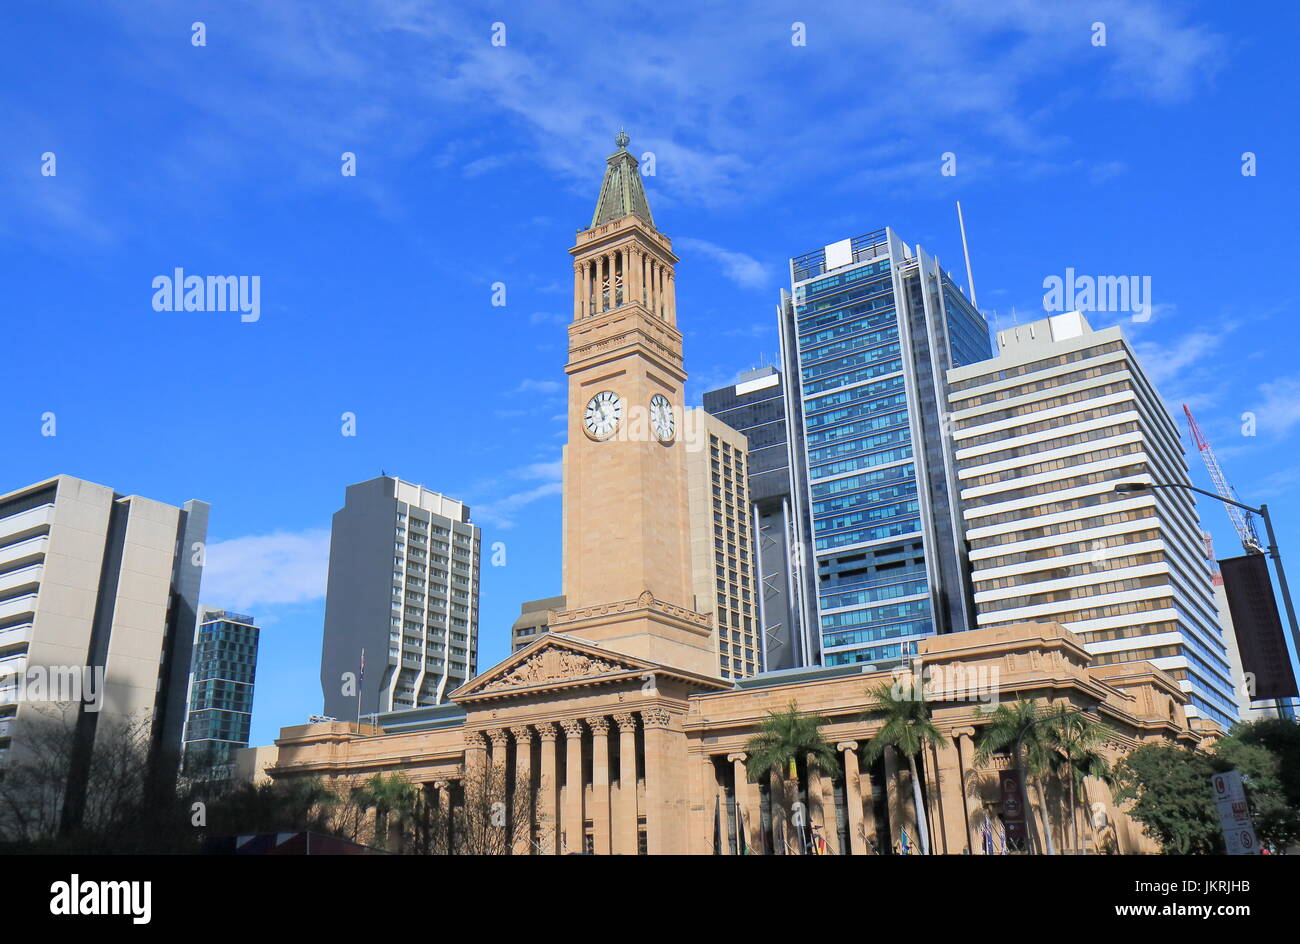 L'Hôtel de ville musée de Brisbane Australie l'architecture historique Banque D'Images